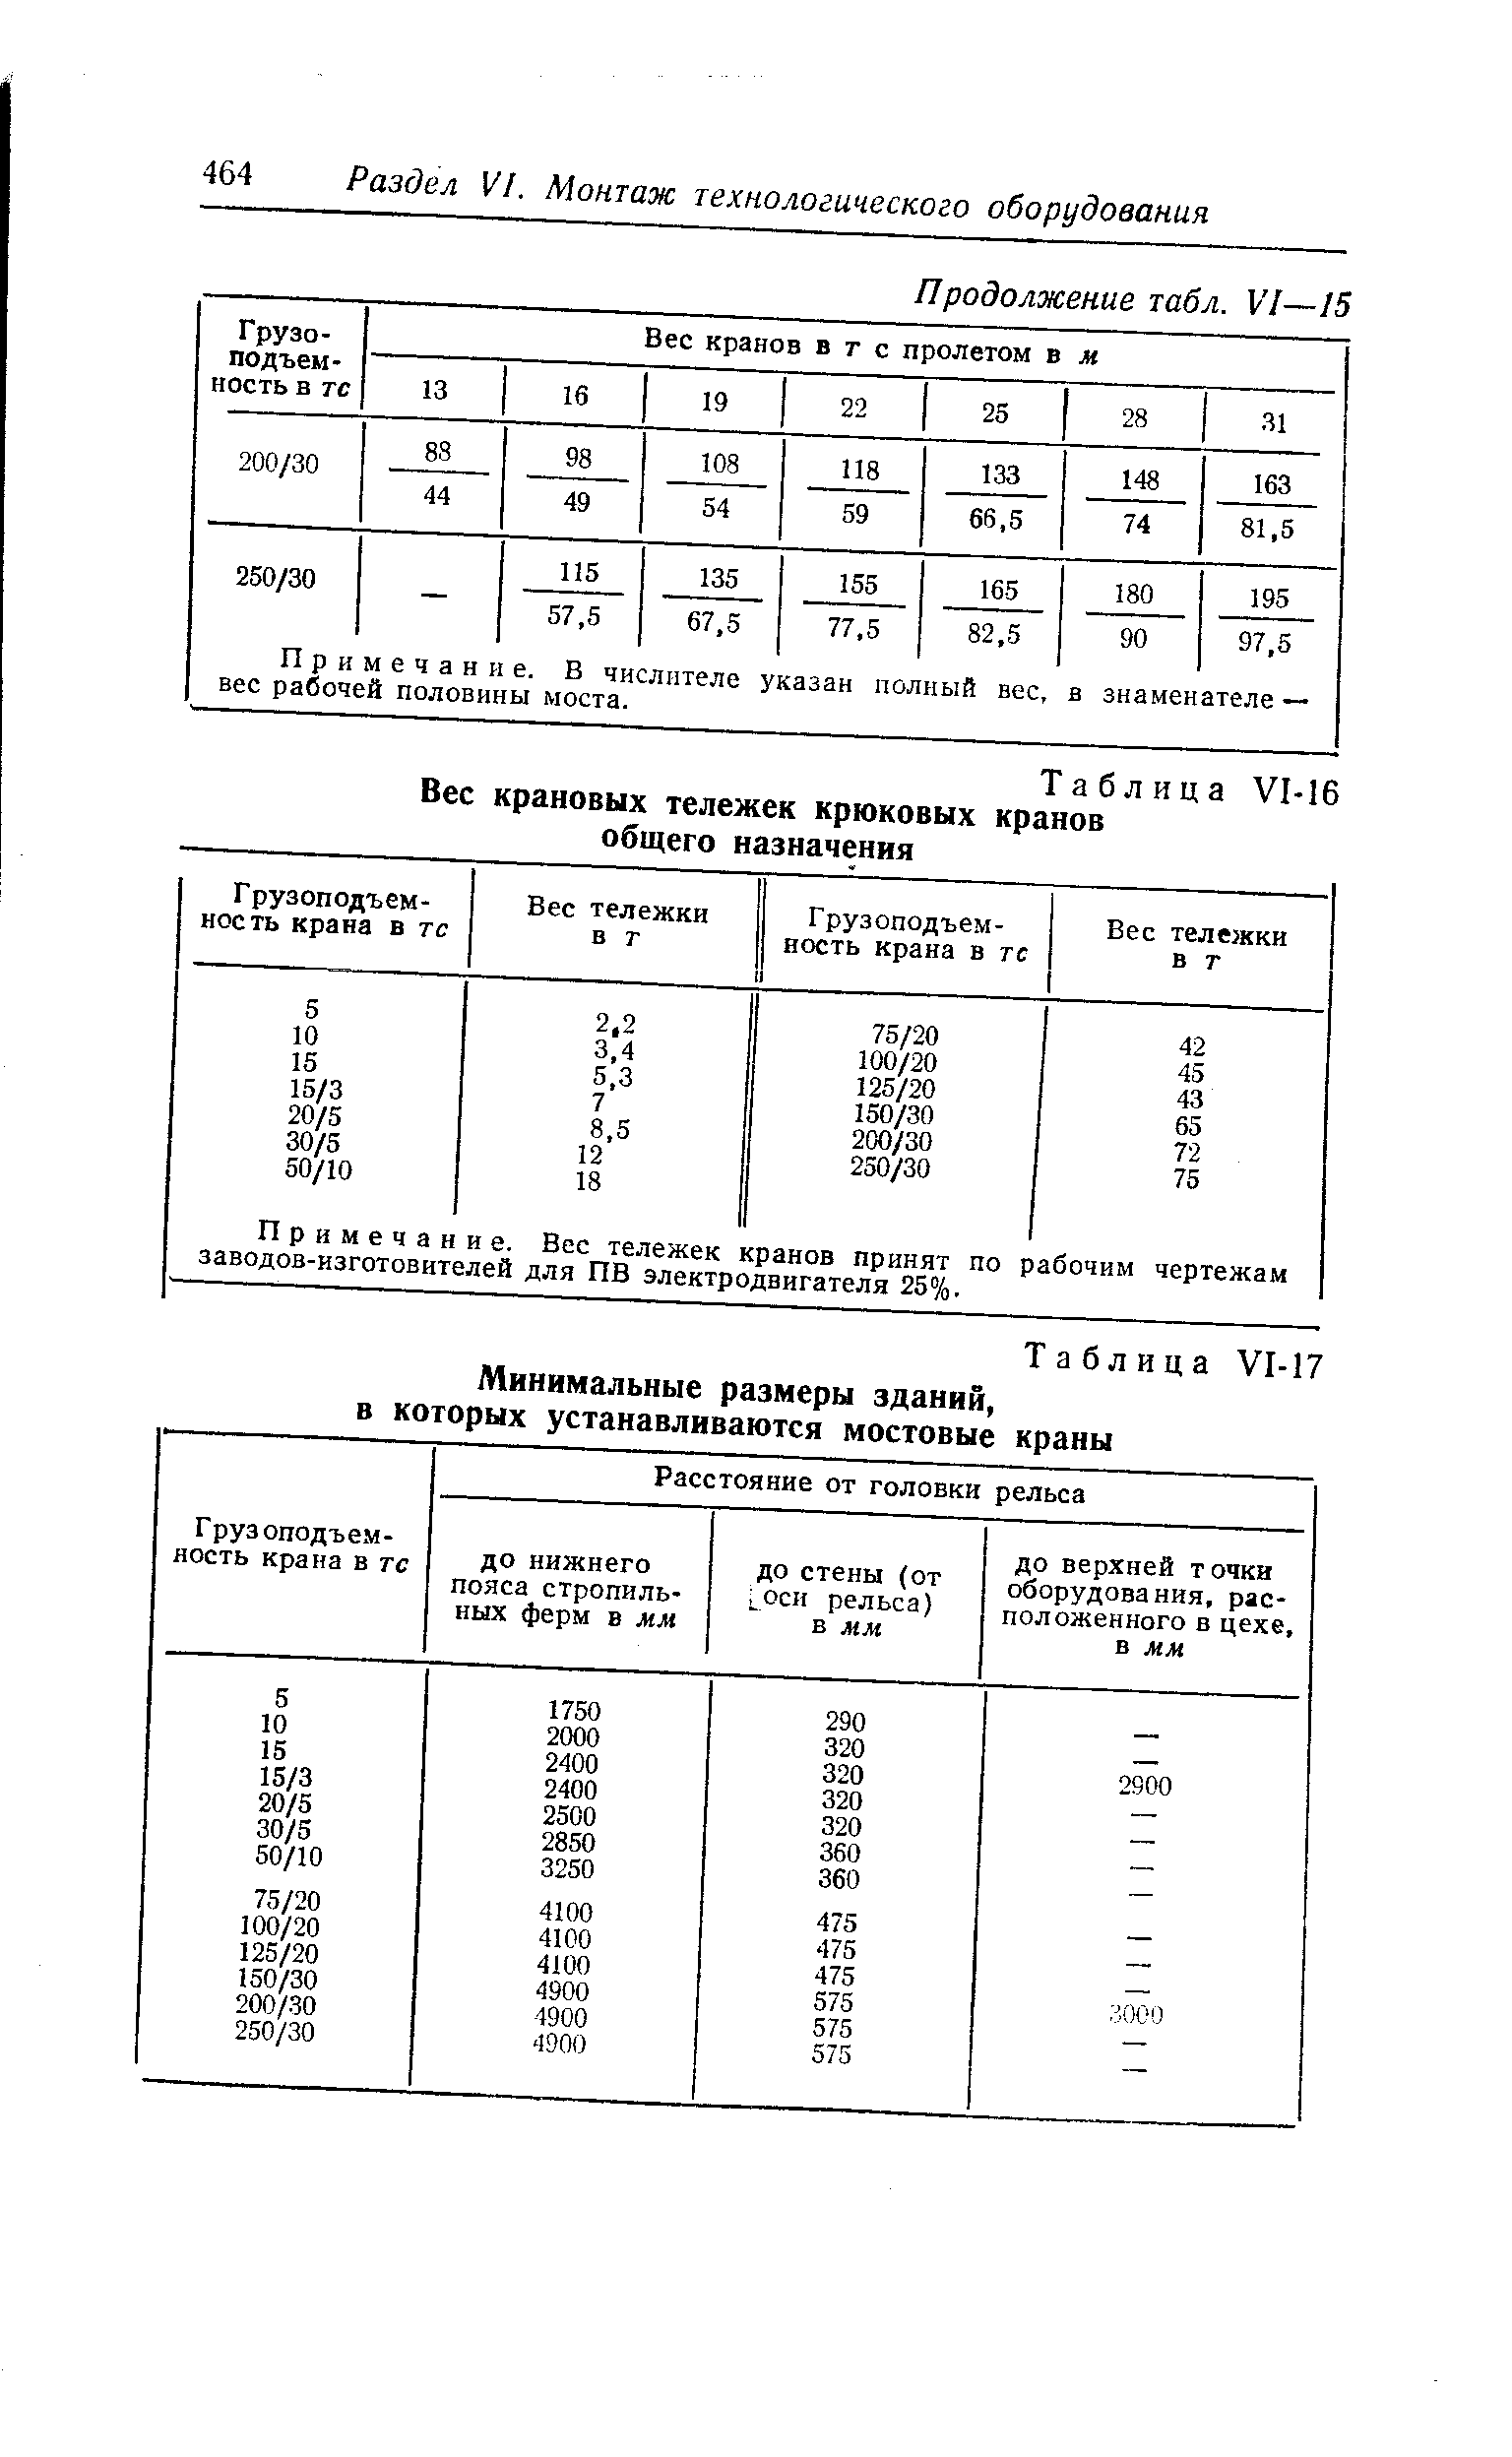 Таблица УМб Вес крановых тележек крюковых кранов общего назначения
